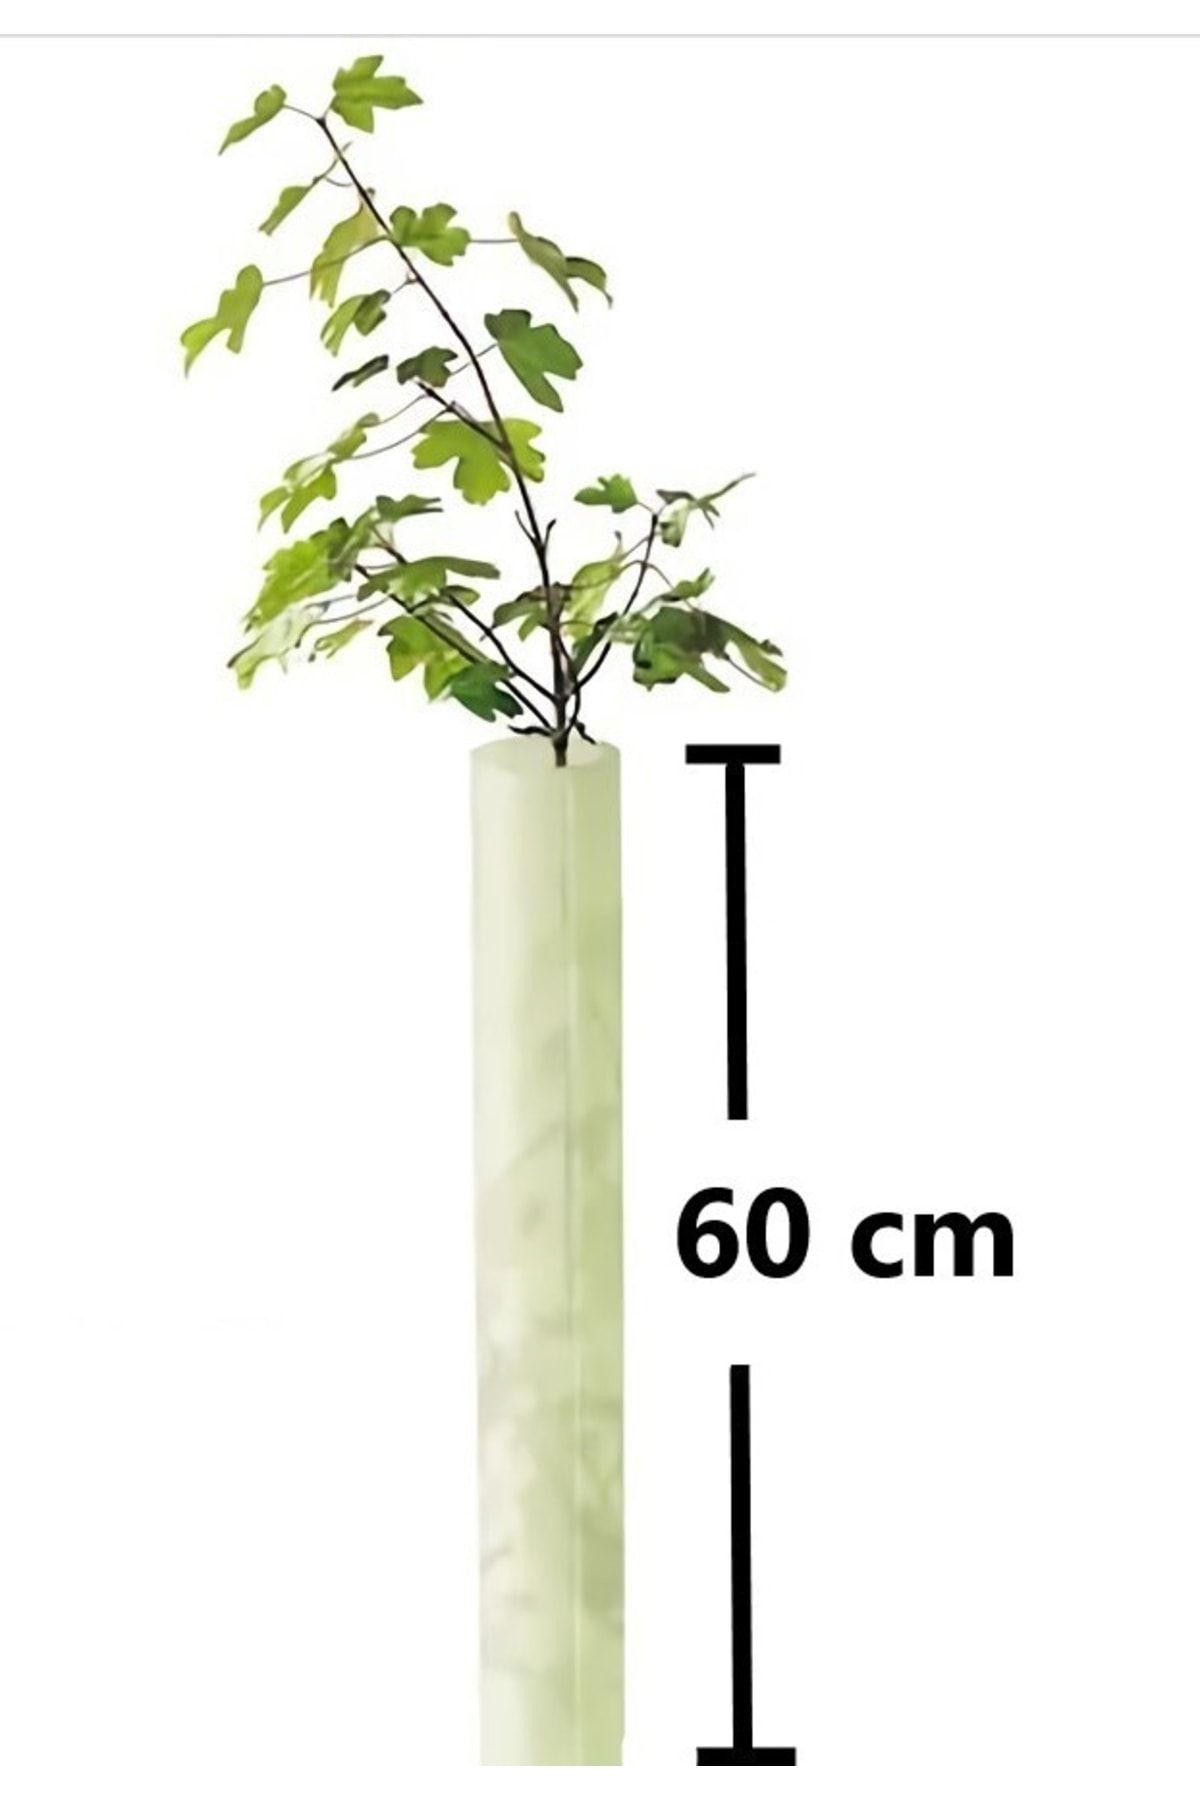 Tubex Fidan Fide Bitki Ağaç Koruma Tüpü Koruyucu Kap Kılıf 5 Li Boy : 60 Cm -mikrosera Fruitwrap